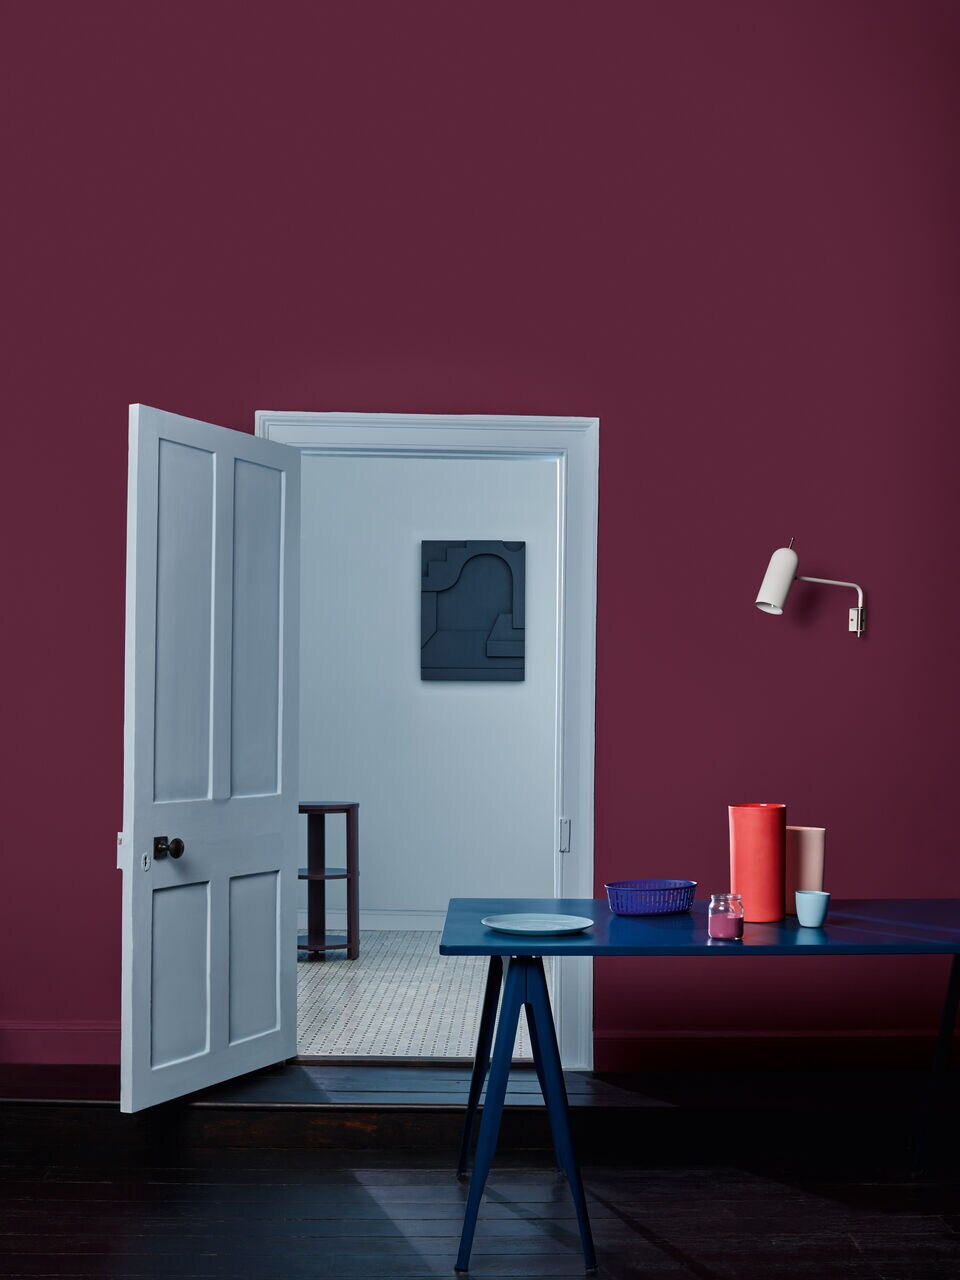 Ein schlicht eingerichteter Raum mit einem blauen Tisch, einer weißen Wand und satt-pinken Wänden